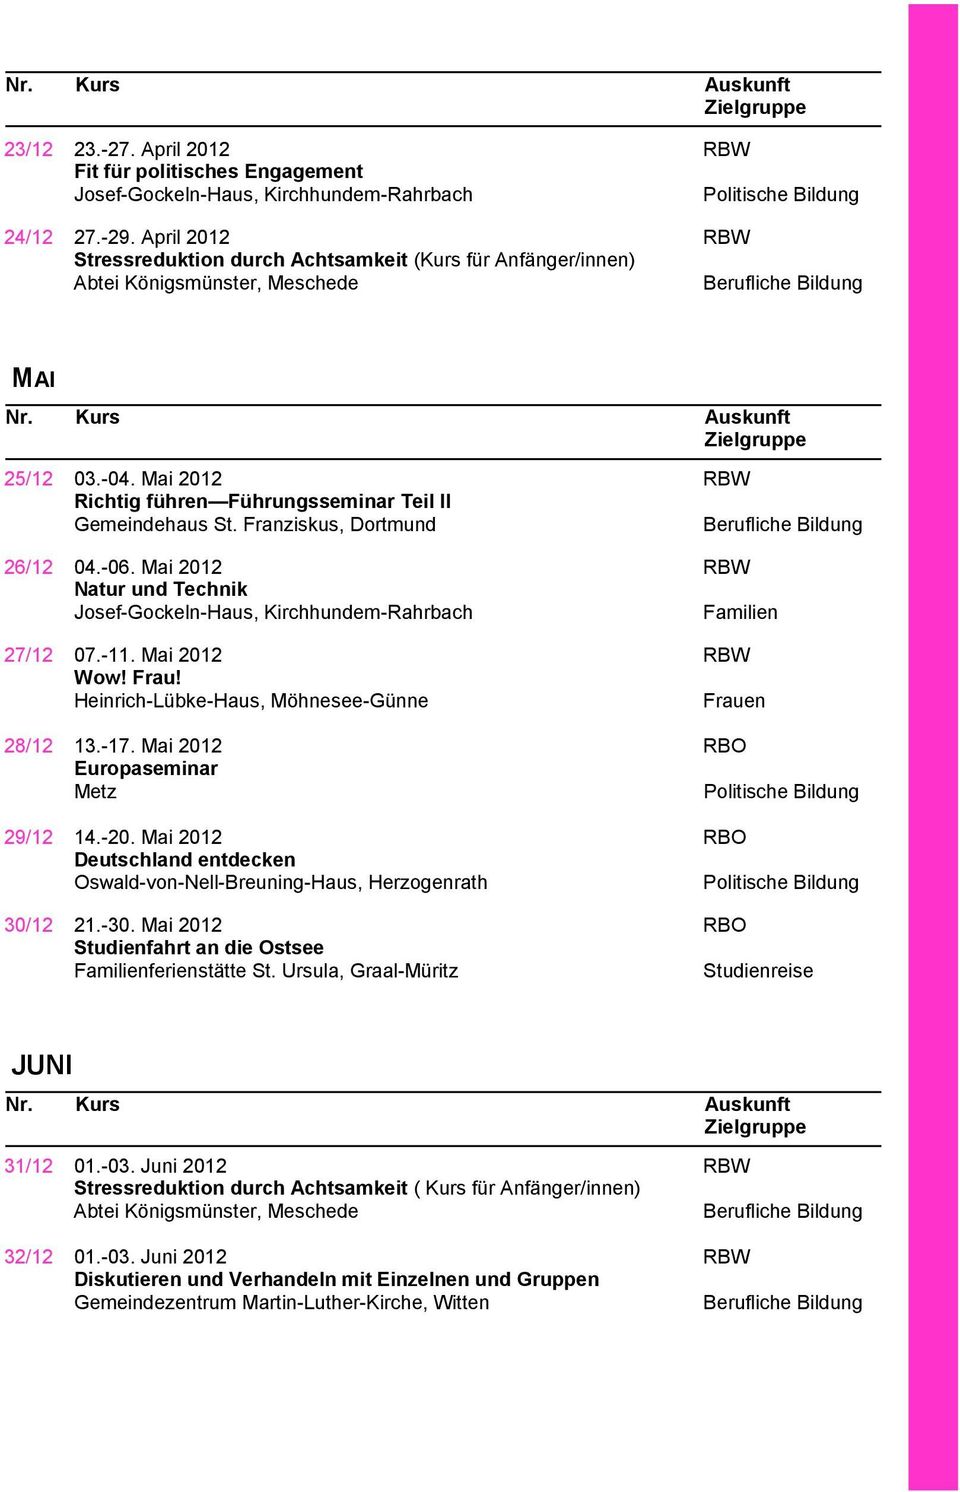 -17. Mai 2012 RBO Europaseminar Metz 29/12 14.-20. Mai 2012 RBO Deutschland entdecken Oswald-von-Nell-Breuning-Haus, Herzogenrath 30/12 21.-30.